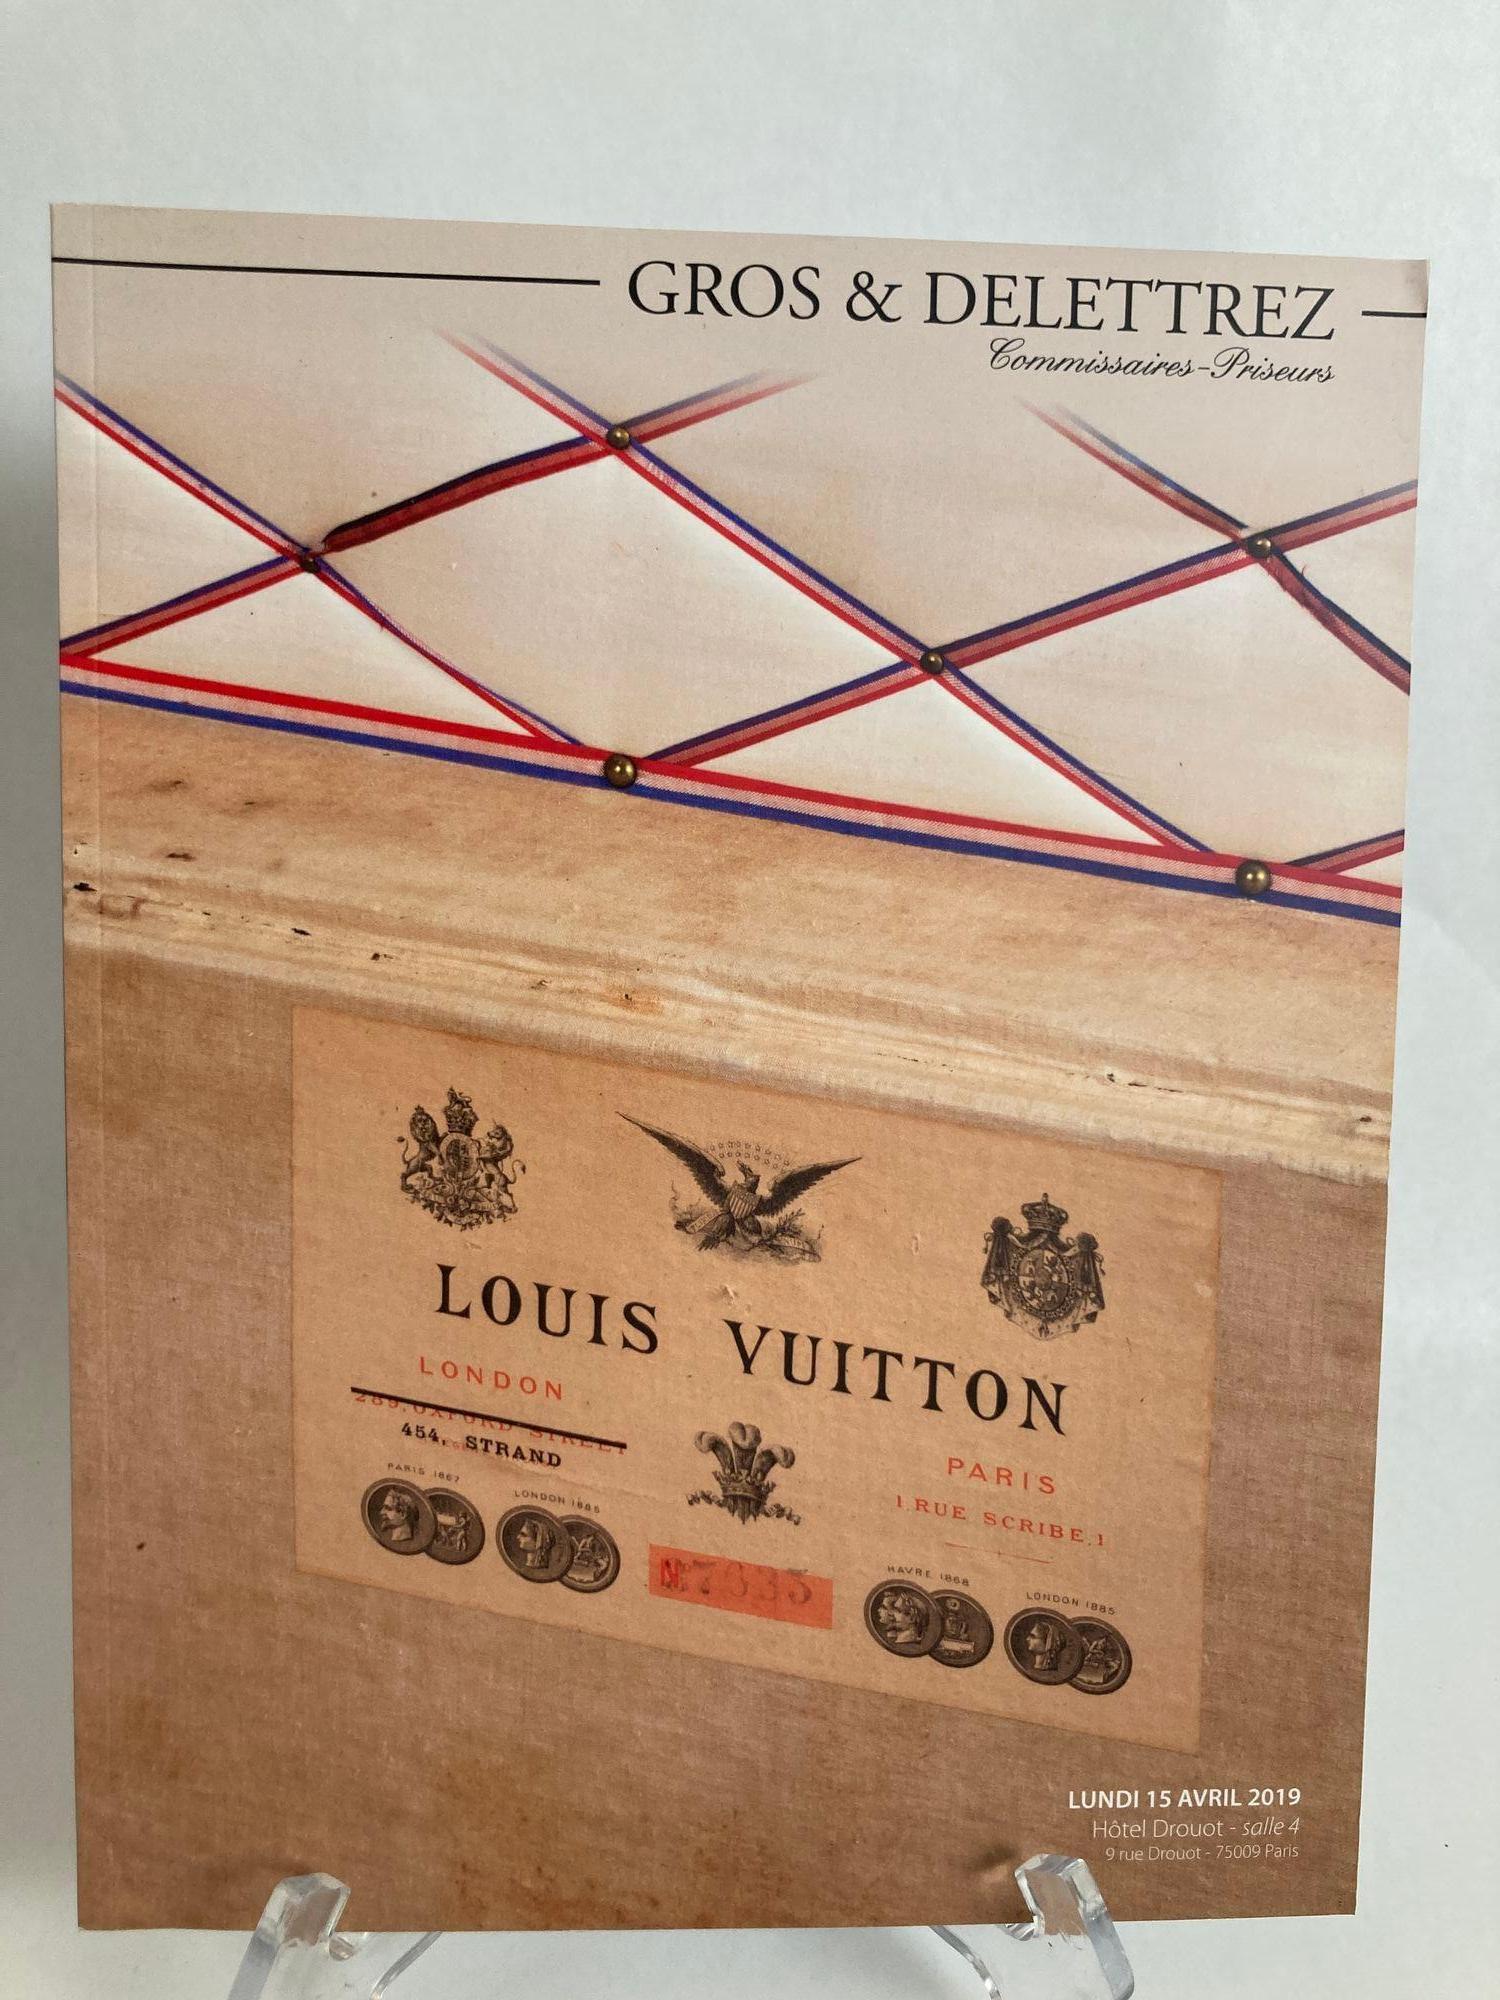 Louis Vuitton Paris Auction Catalog 2019 Published by Gros & Delettrez.
2019 307 lots Gros & Delettrez 15 Avril 2019
Title: Louis Vuitton Paris Auction Catalog 2019
Book Publisher: Gros & Delettrez
Publication Date: 2019
Binding: Soft